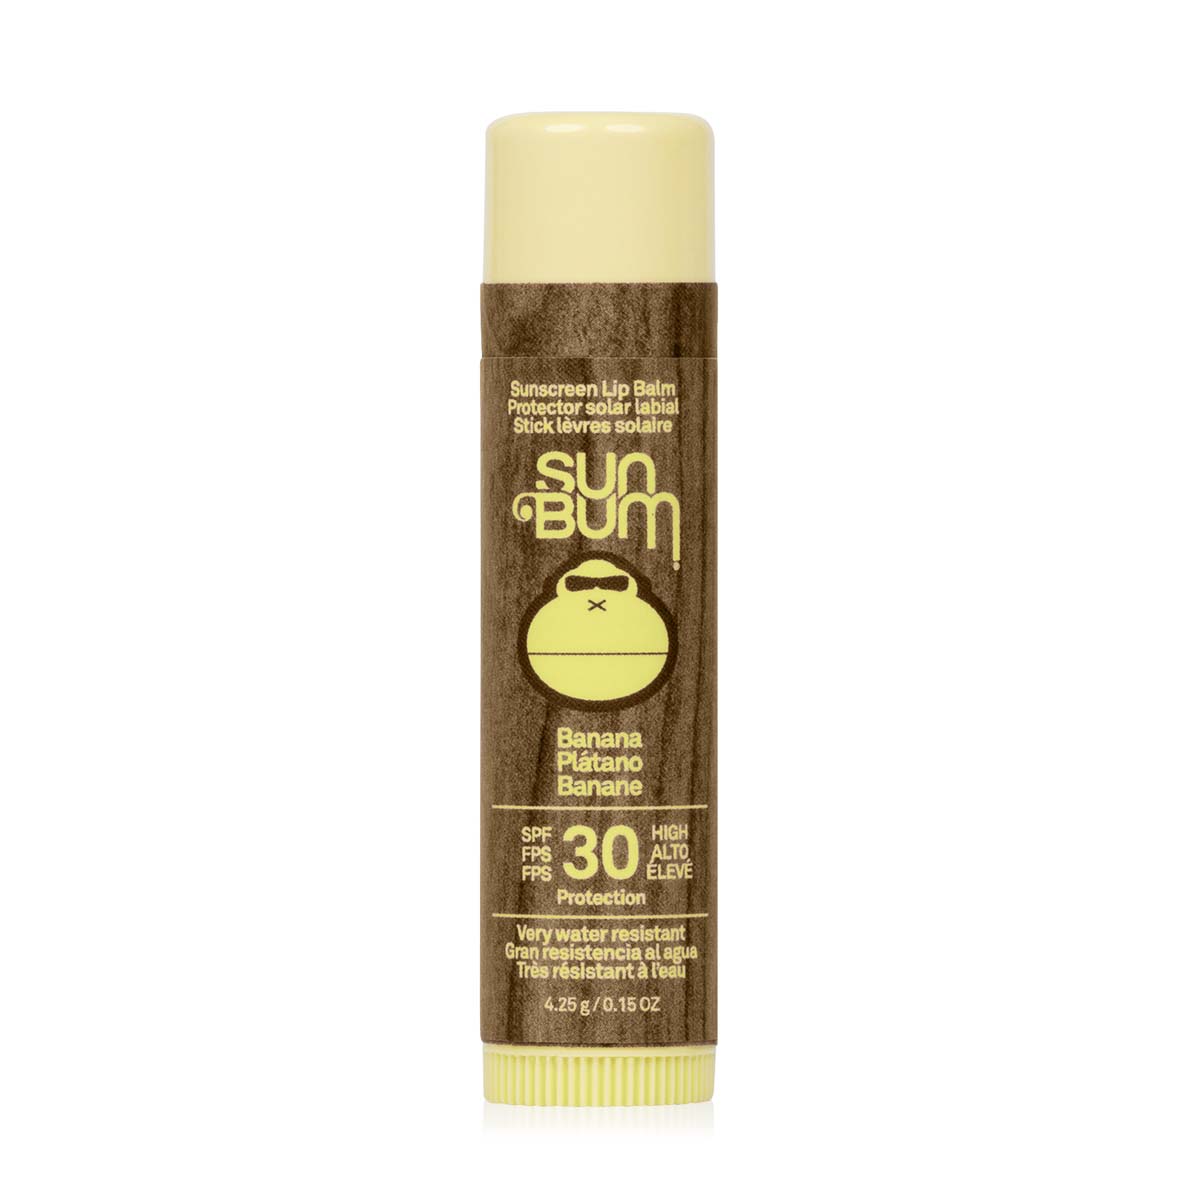 Sun Bum Original Spf30 Sunscreen Lip Balm - Banana 4.25G